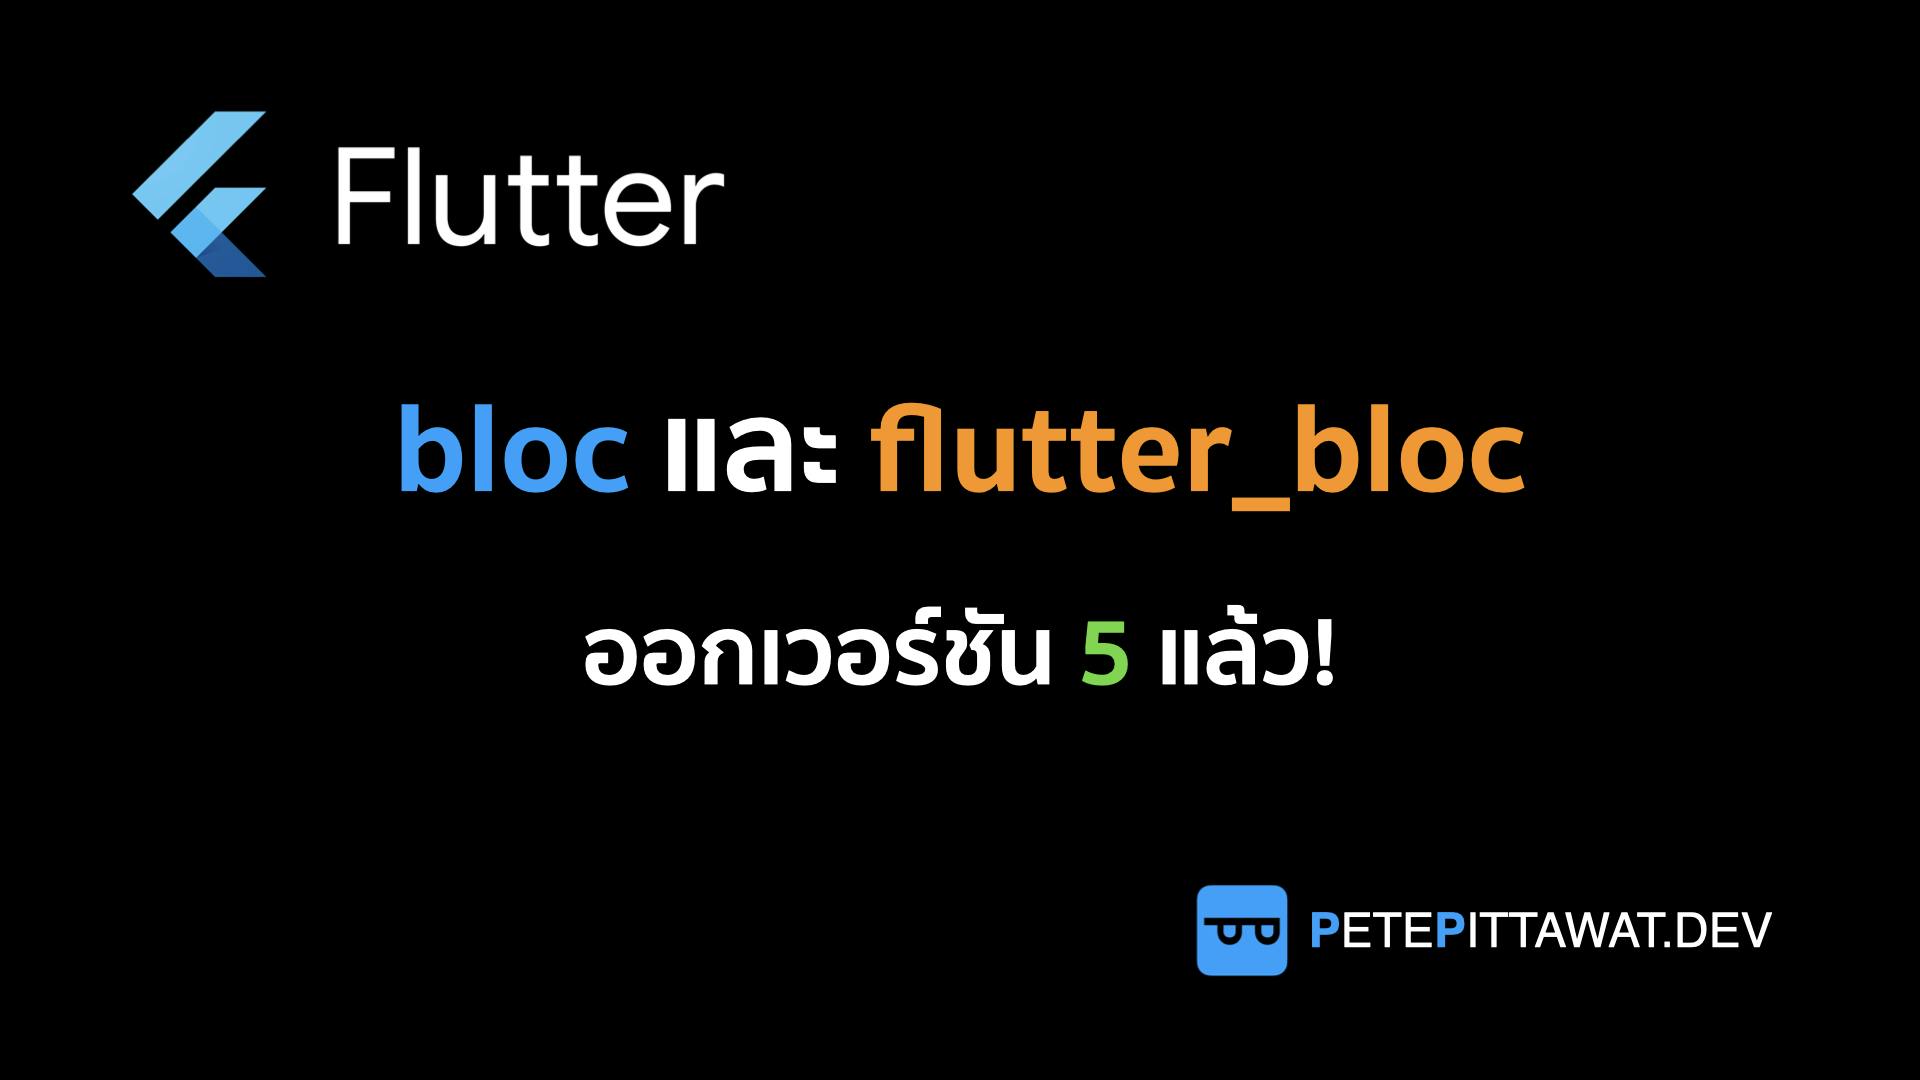 Cover Image for Flutter: bloc และ flutter_bloc v5 มาแล้ว!